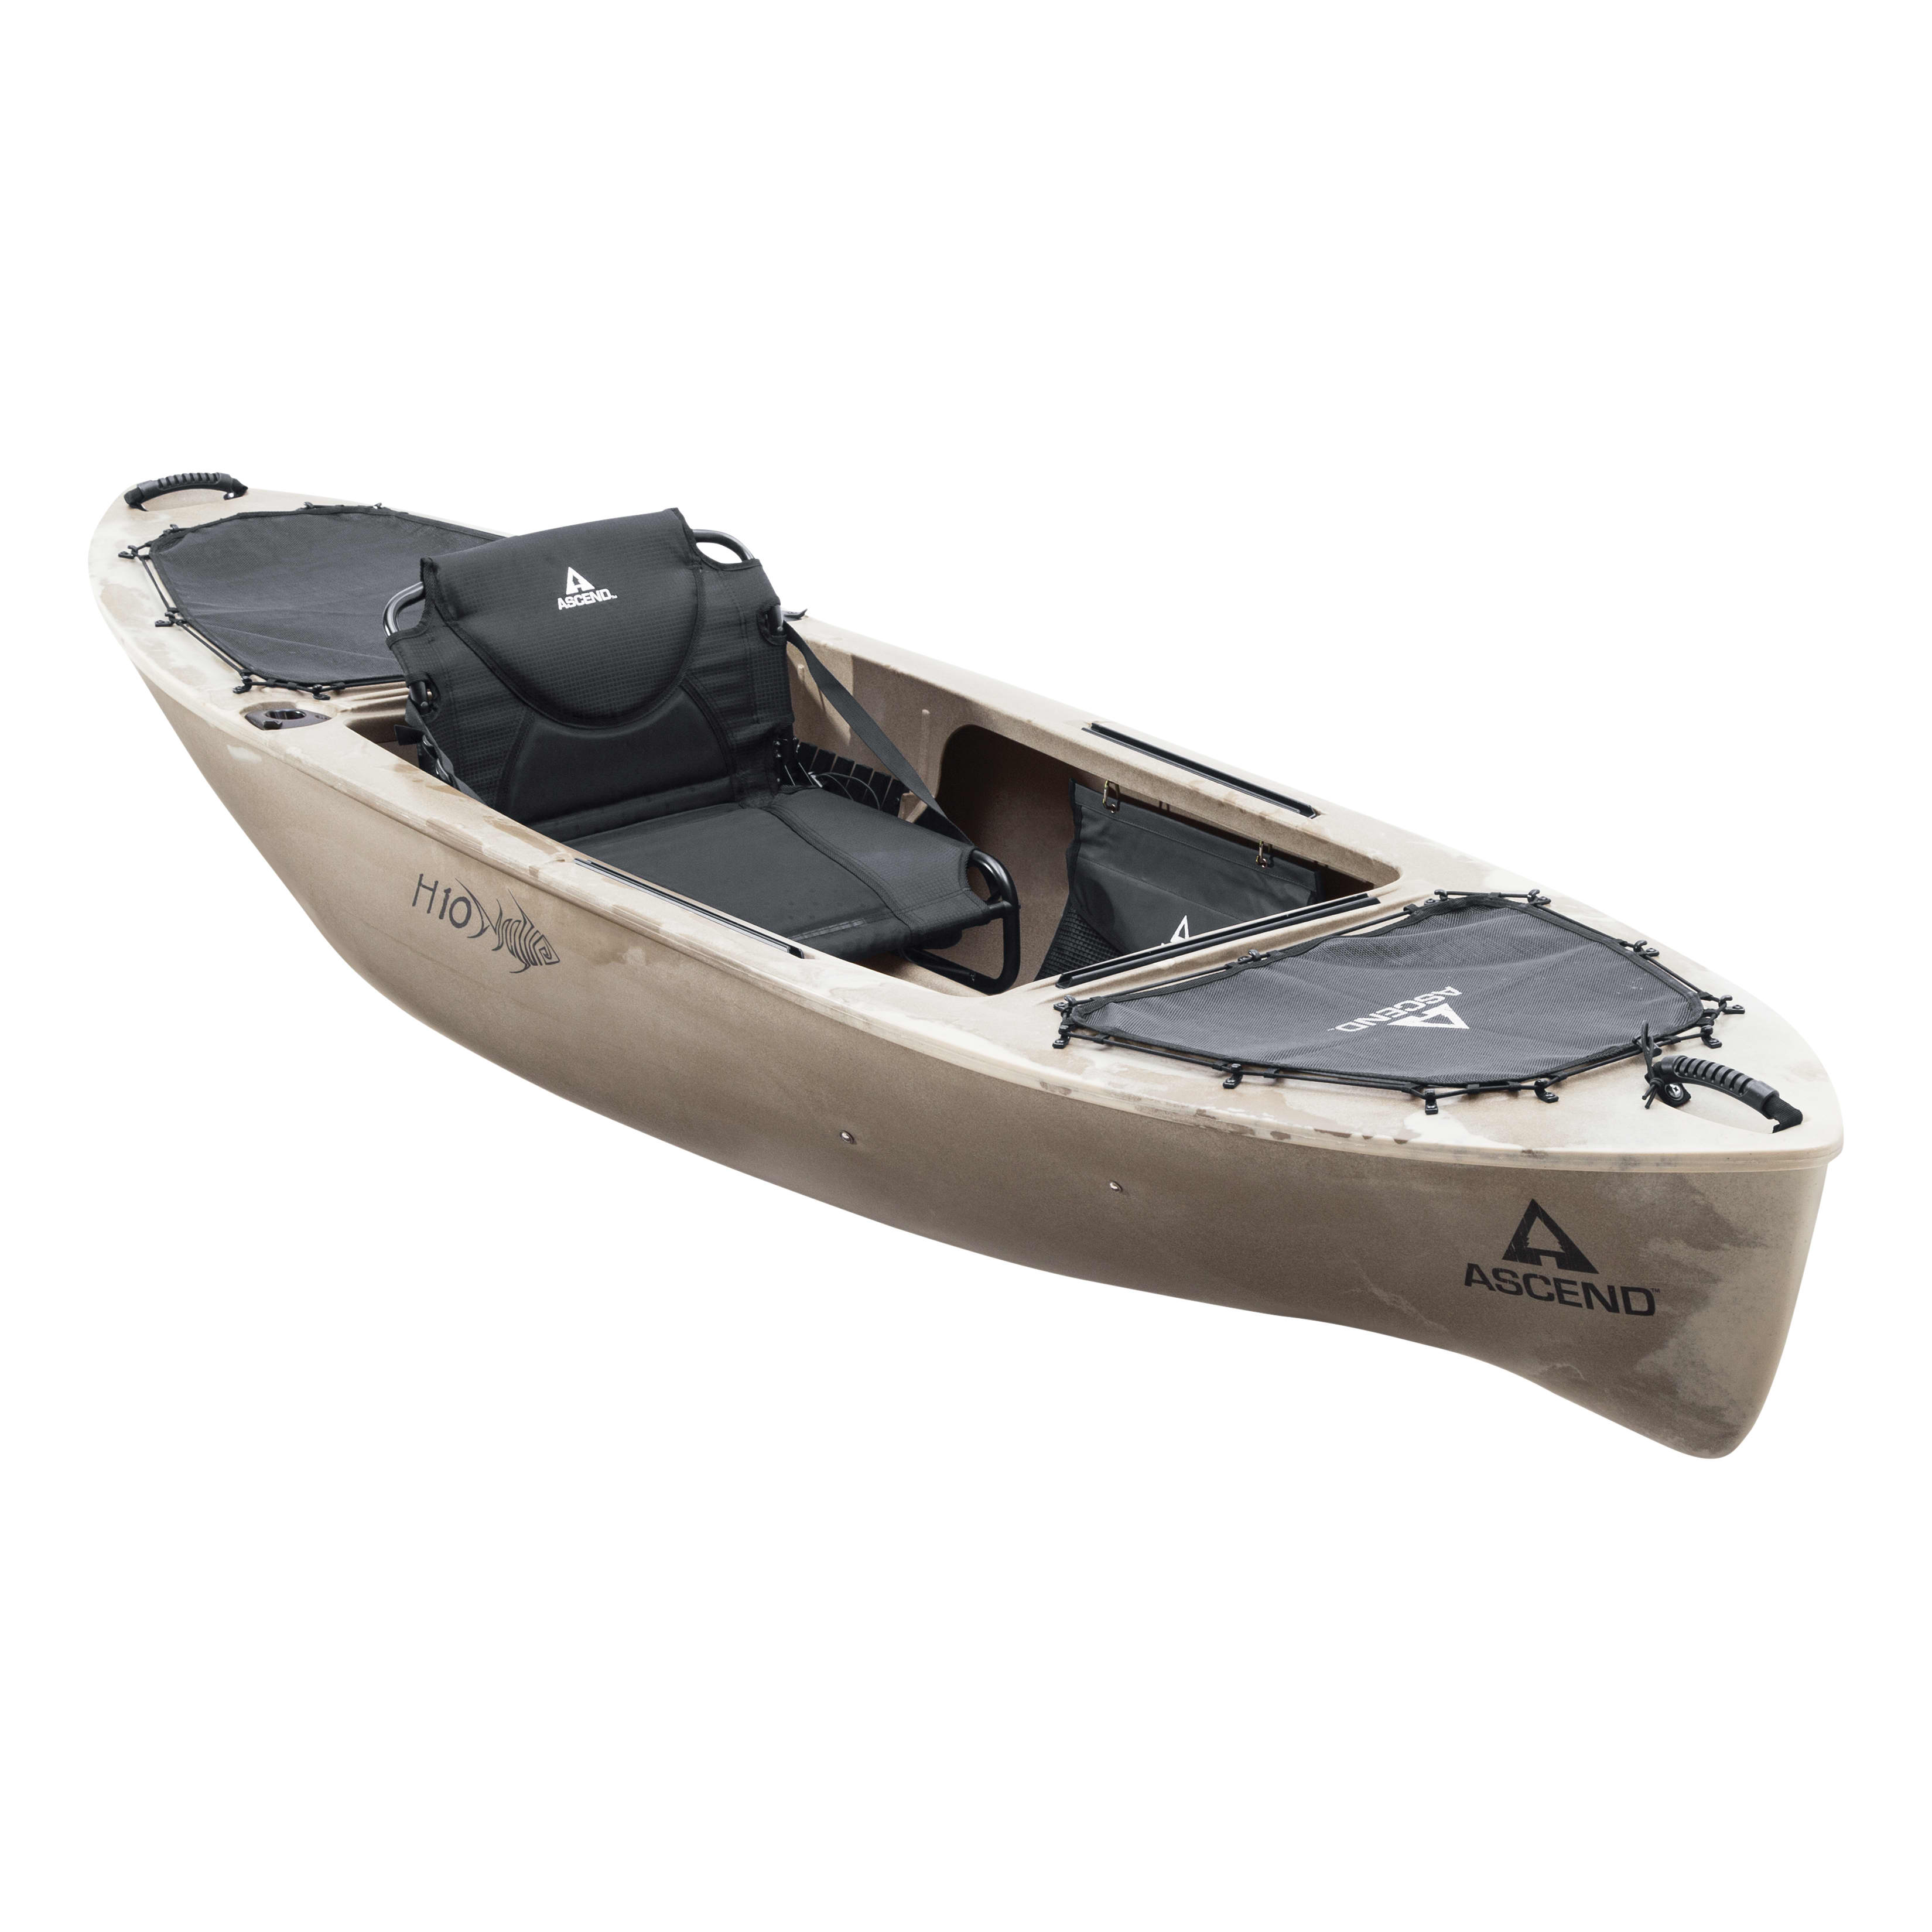 Adjustable Slide Seat Pedestal Mount for Fishing Boat Kayak Back Relief Leg  Room